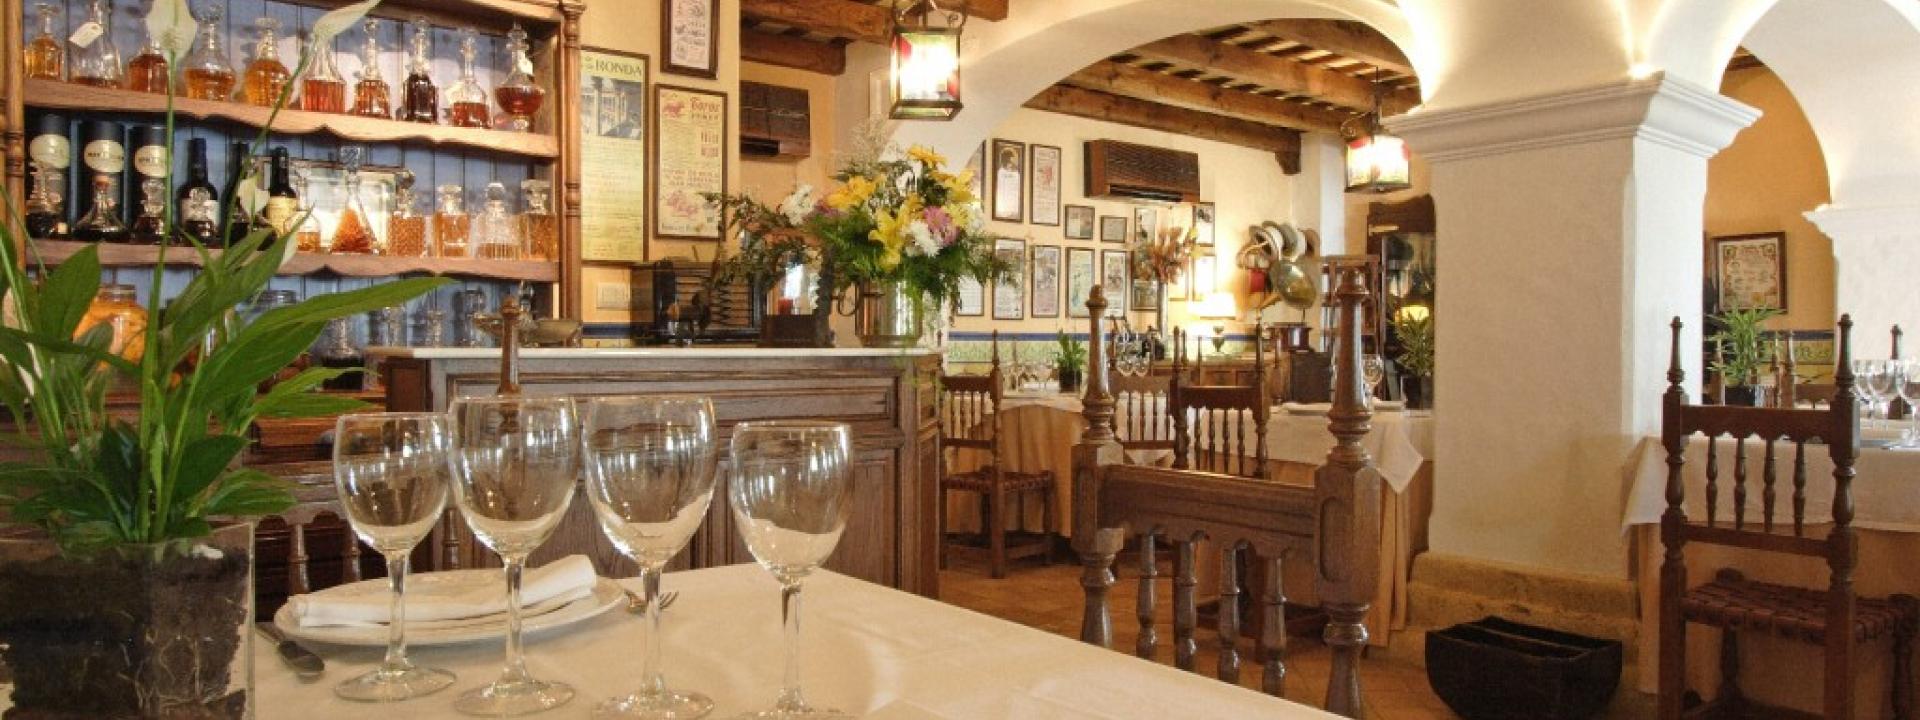 Restaurante Venta Melchor foto interior fuente internet